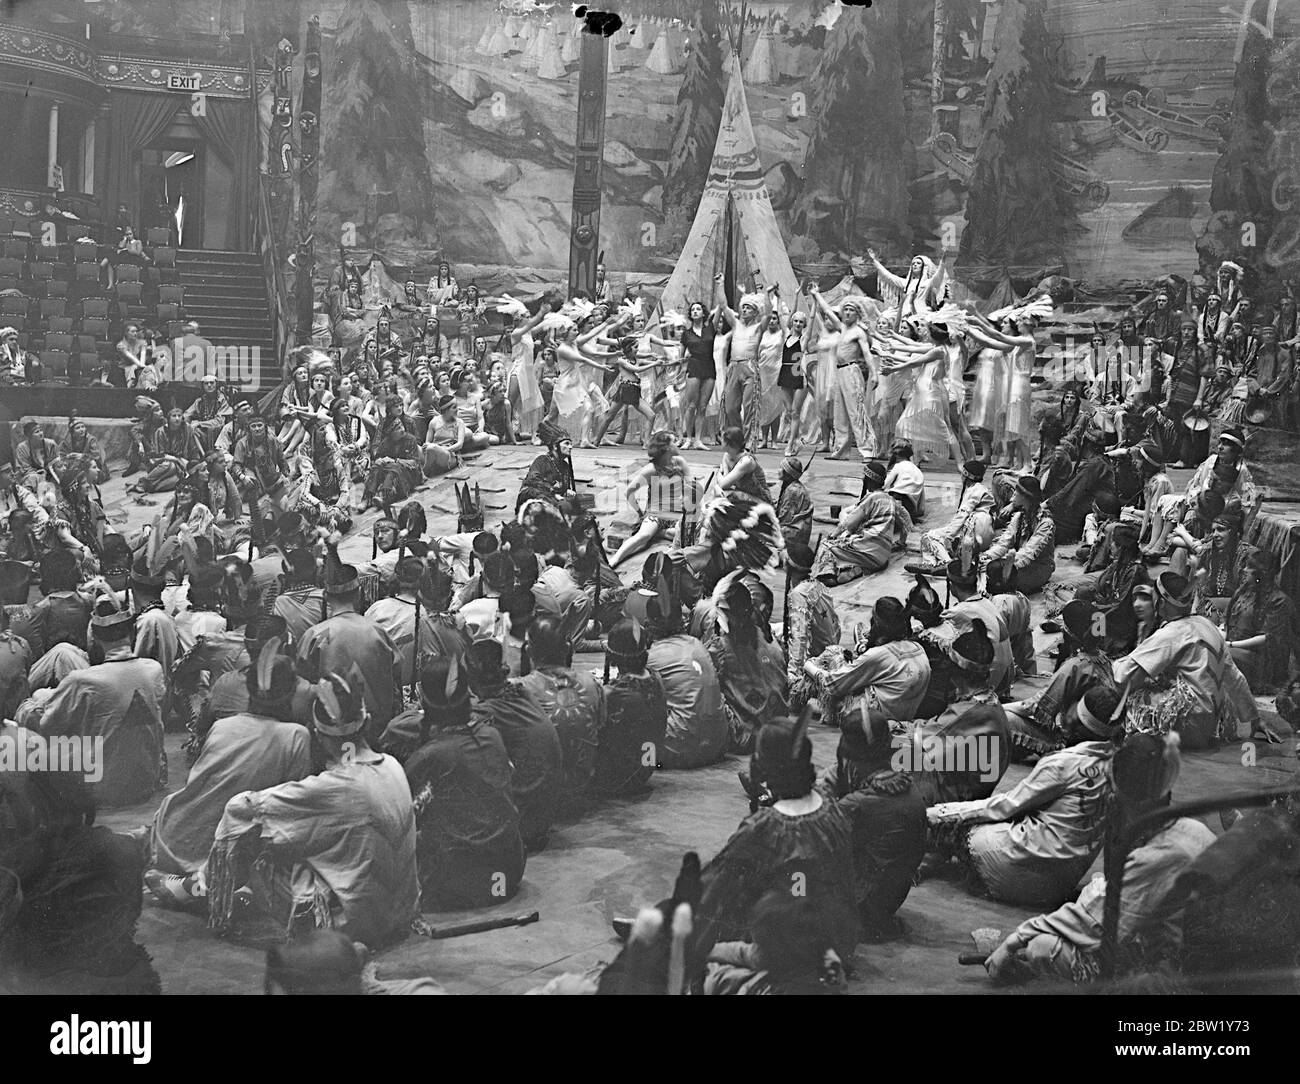 Hiawatha Generalprobe in der Albert Hall. Eine Generalprobe für das Spektakel Hiawatha, aufgeführt von der Royal Choral Society, fand in der Royal Albert Hall vor der Eröffnung am kommenden Montag statt. Foto zeigt: Eine der grandiosen Szenen bei der Generalprobe von Hiawatha. Juni 1937 Stockfoto